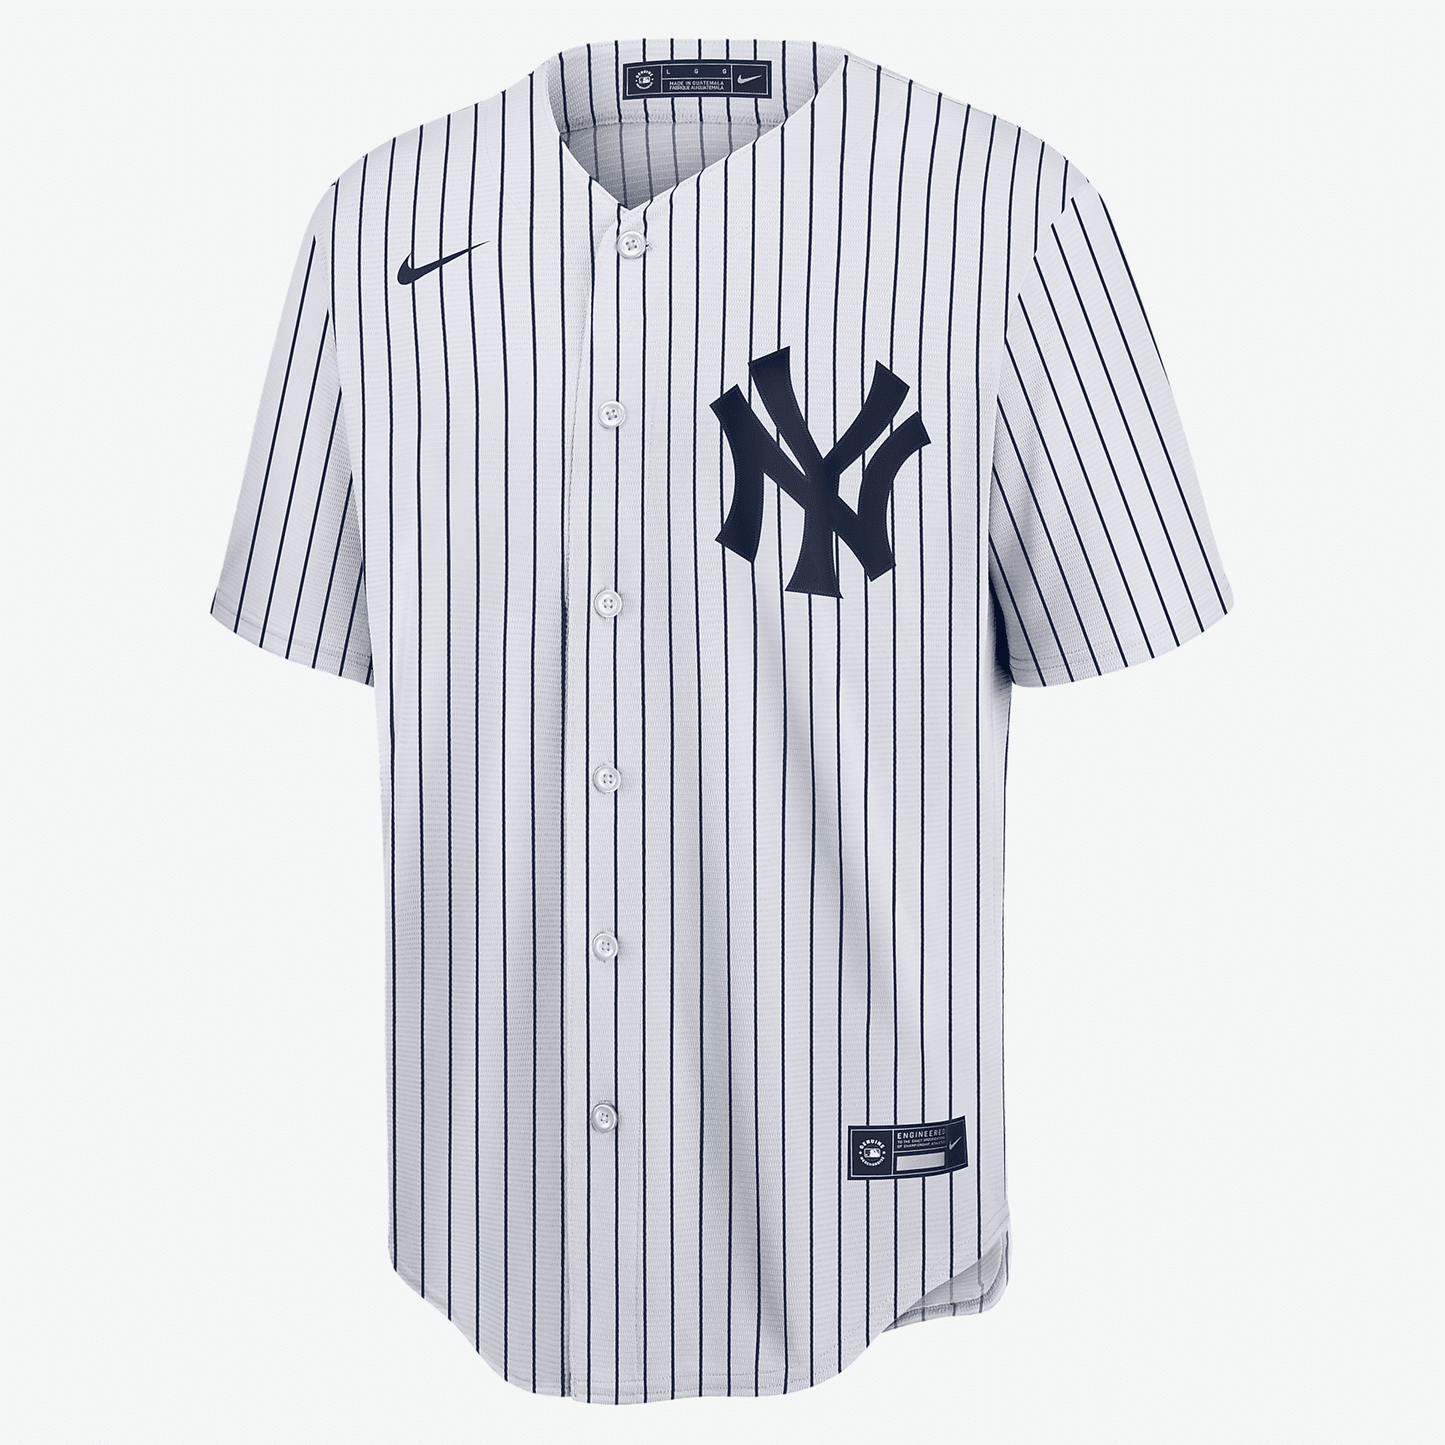 MLB New York Yankees (Derek Jeter) Men's Replica Baseball Jersey - White/Navy